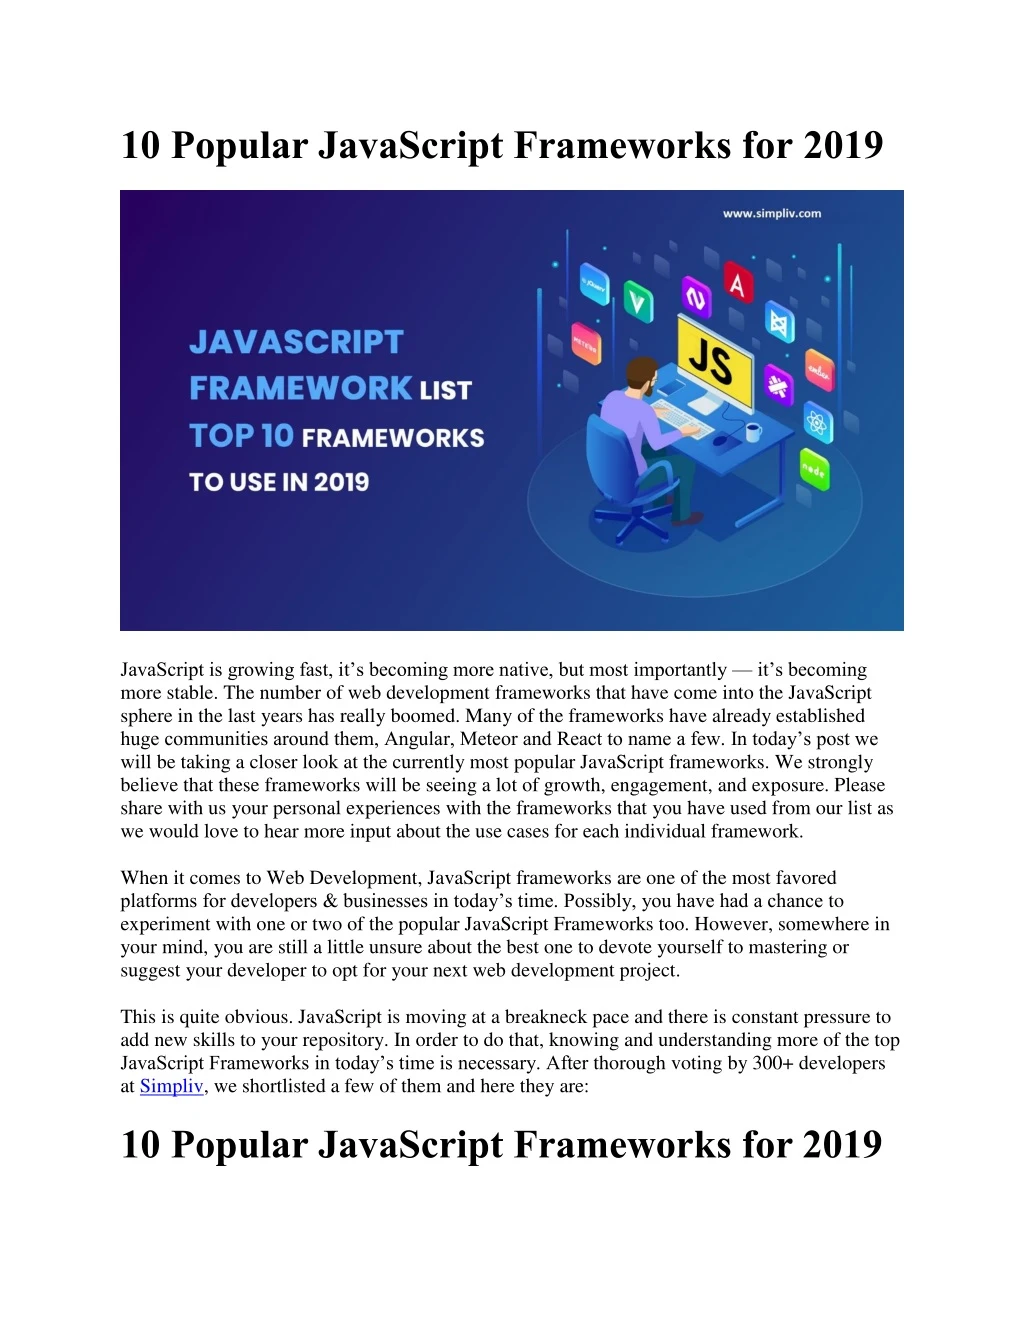 10 popular javascript frameworks for 2019